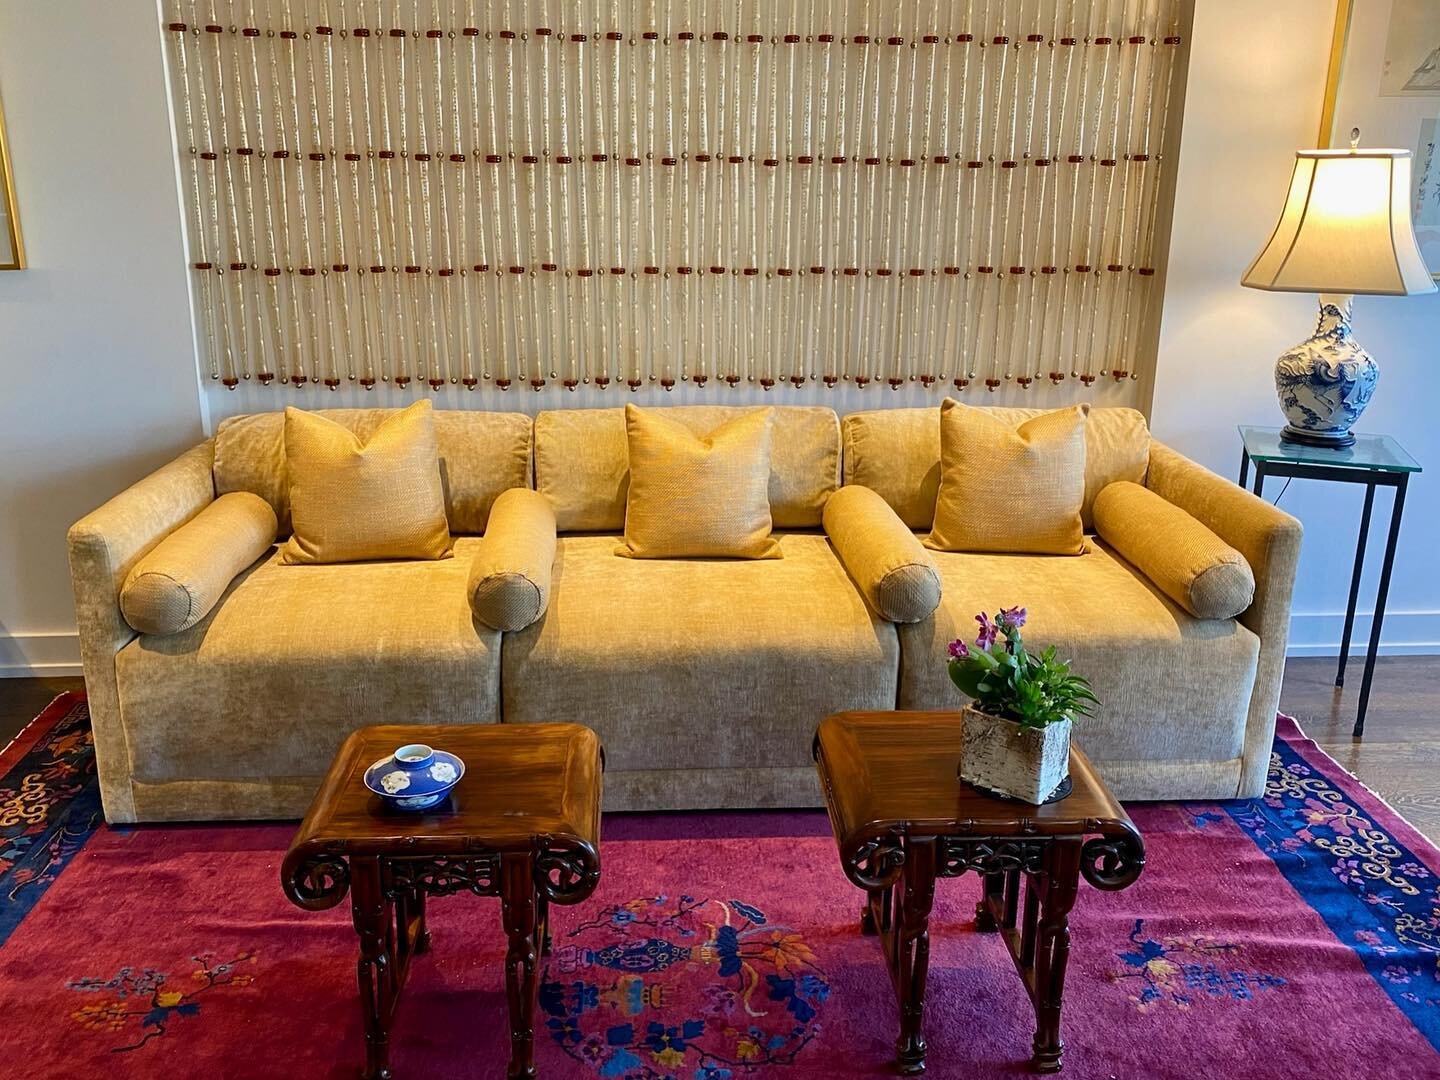 Custom sofa done in velvet with bolsters. 

#upholstery #customfurniture #reupholstery #design #philadelphia